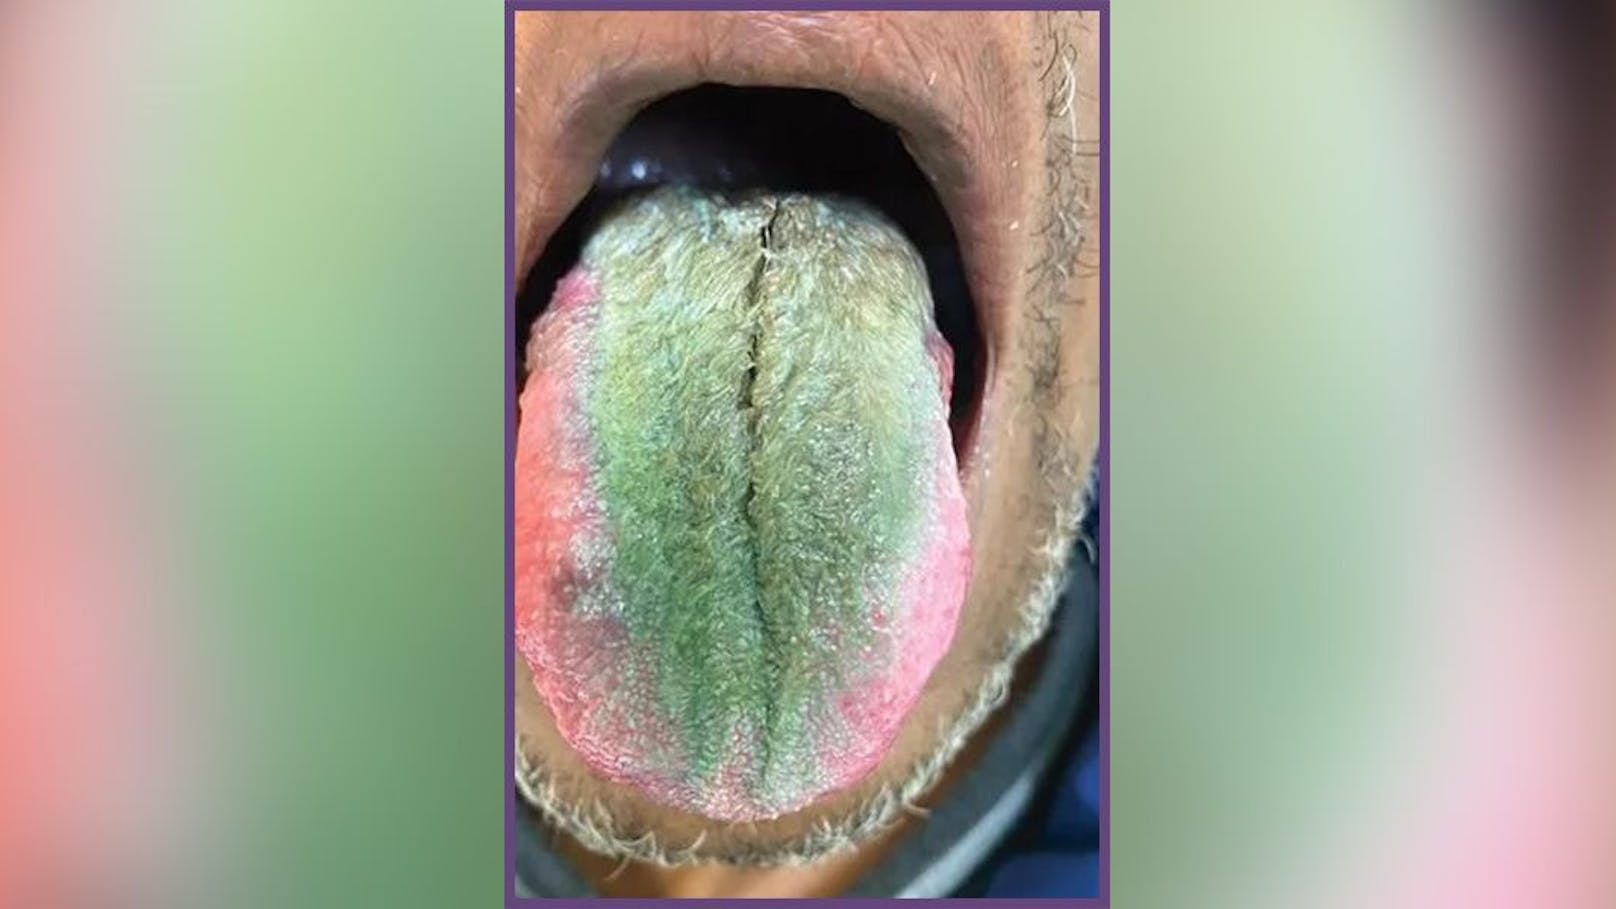 Die Ärzte diagnostizierten bei dem Patienten eine so genannte "haarige Zunge" (Bild) – einen "anormalen Belag" aus Hautzellen, der sich auf der Oberseite der Zunge bildet, wenn sich winzigen Ausstülpungen, die die Geschmacksknospen enthalten, aufgrund einer Ansammlung von Ablagerungen und Bakterien vergrößern und verfärbt haben.